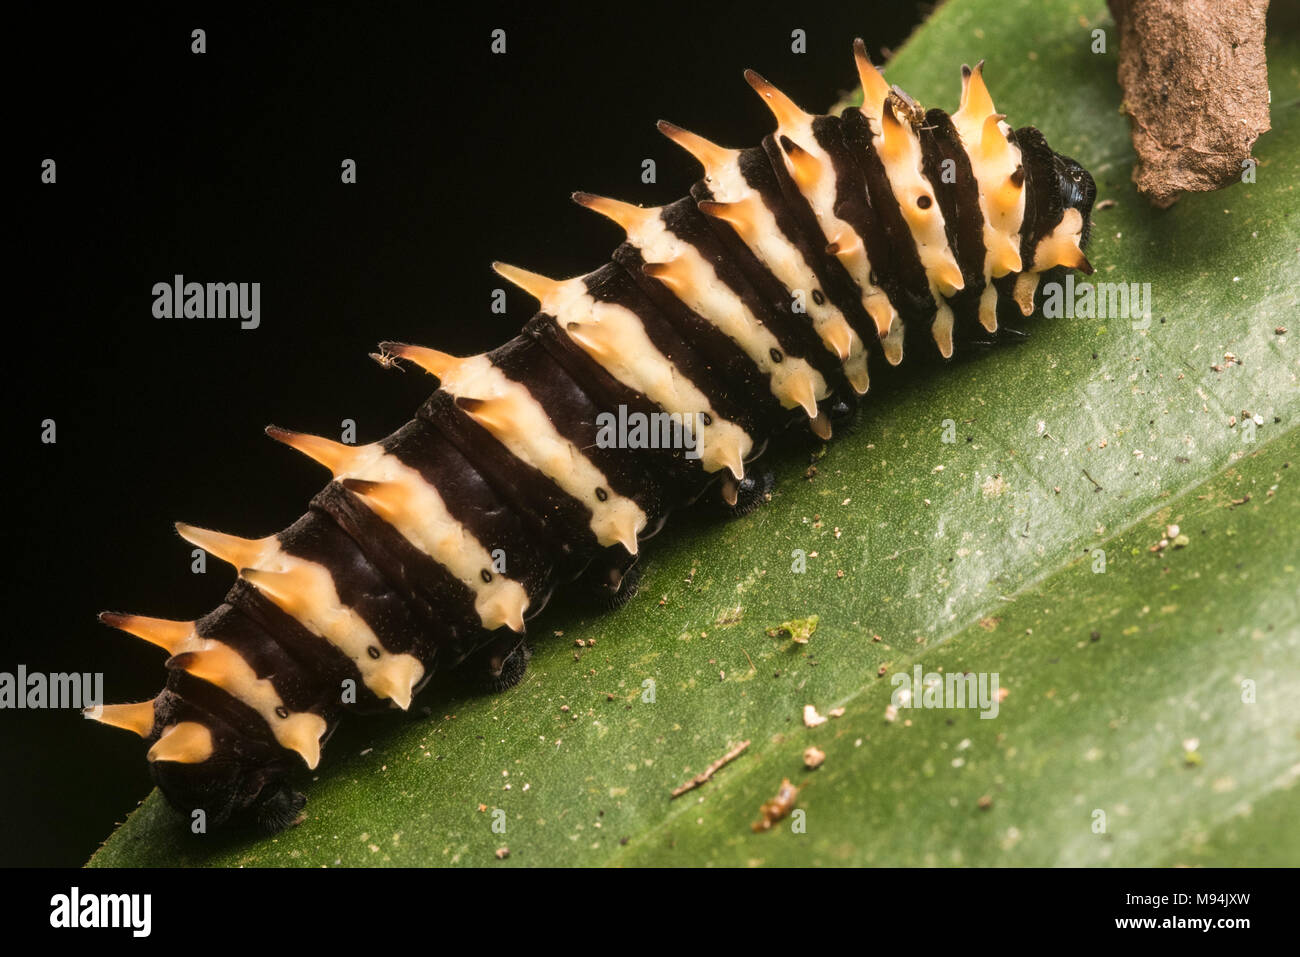 Un caterpillar non identificato dalla foresta pluviale tropicale in Perù. I suoi colori vivaci indicano che è probabile una specie nocive con cattivo gusto. Foto Stock